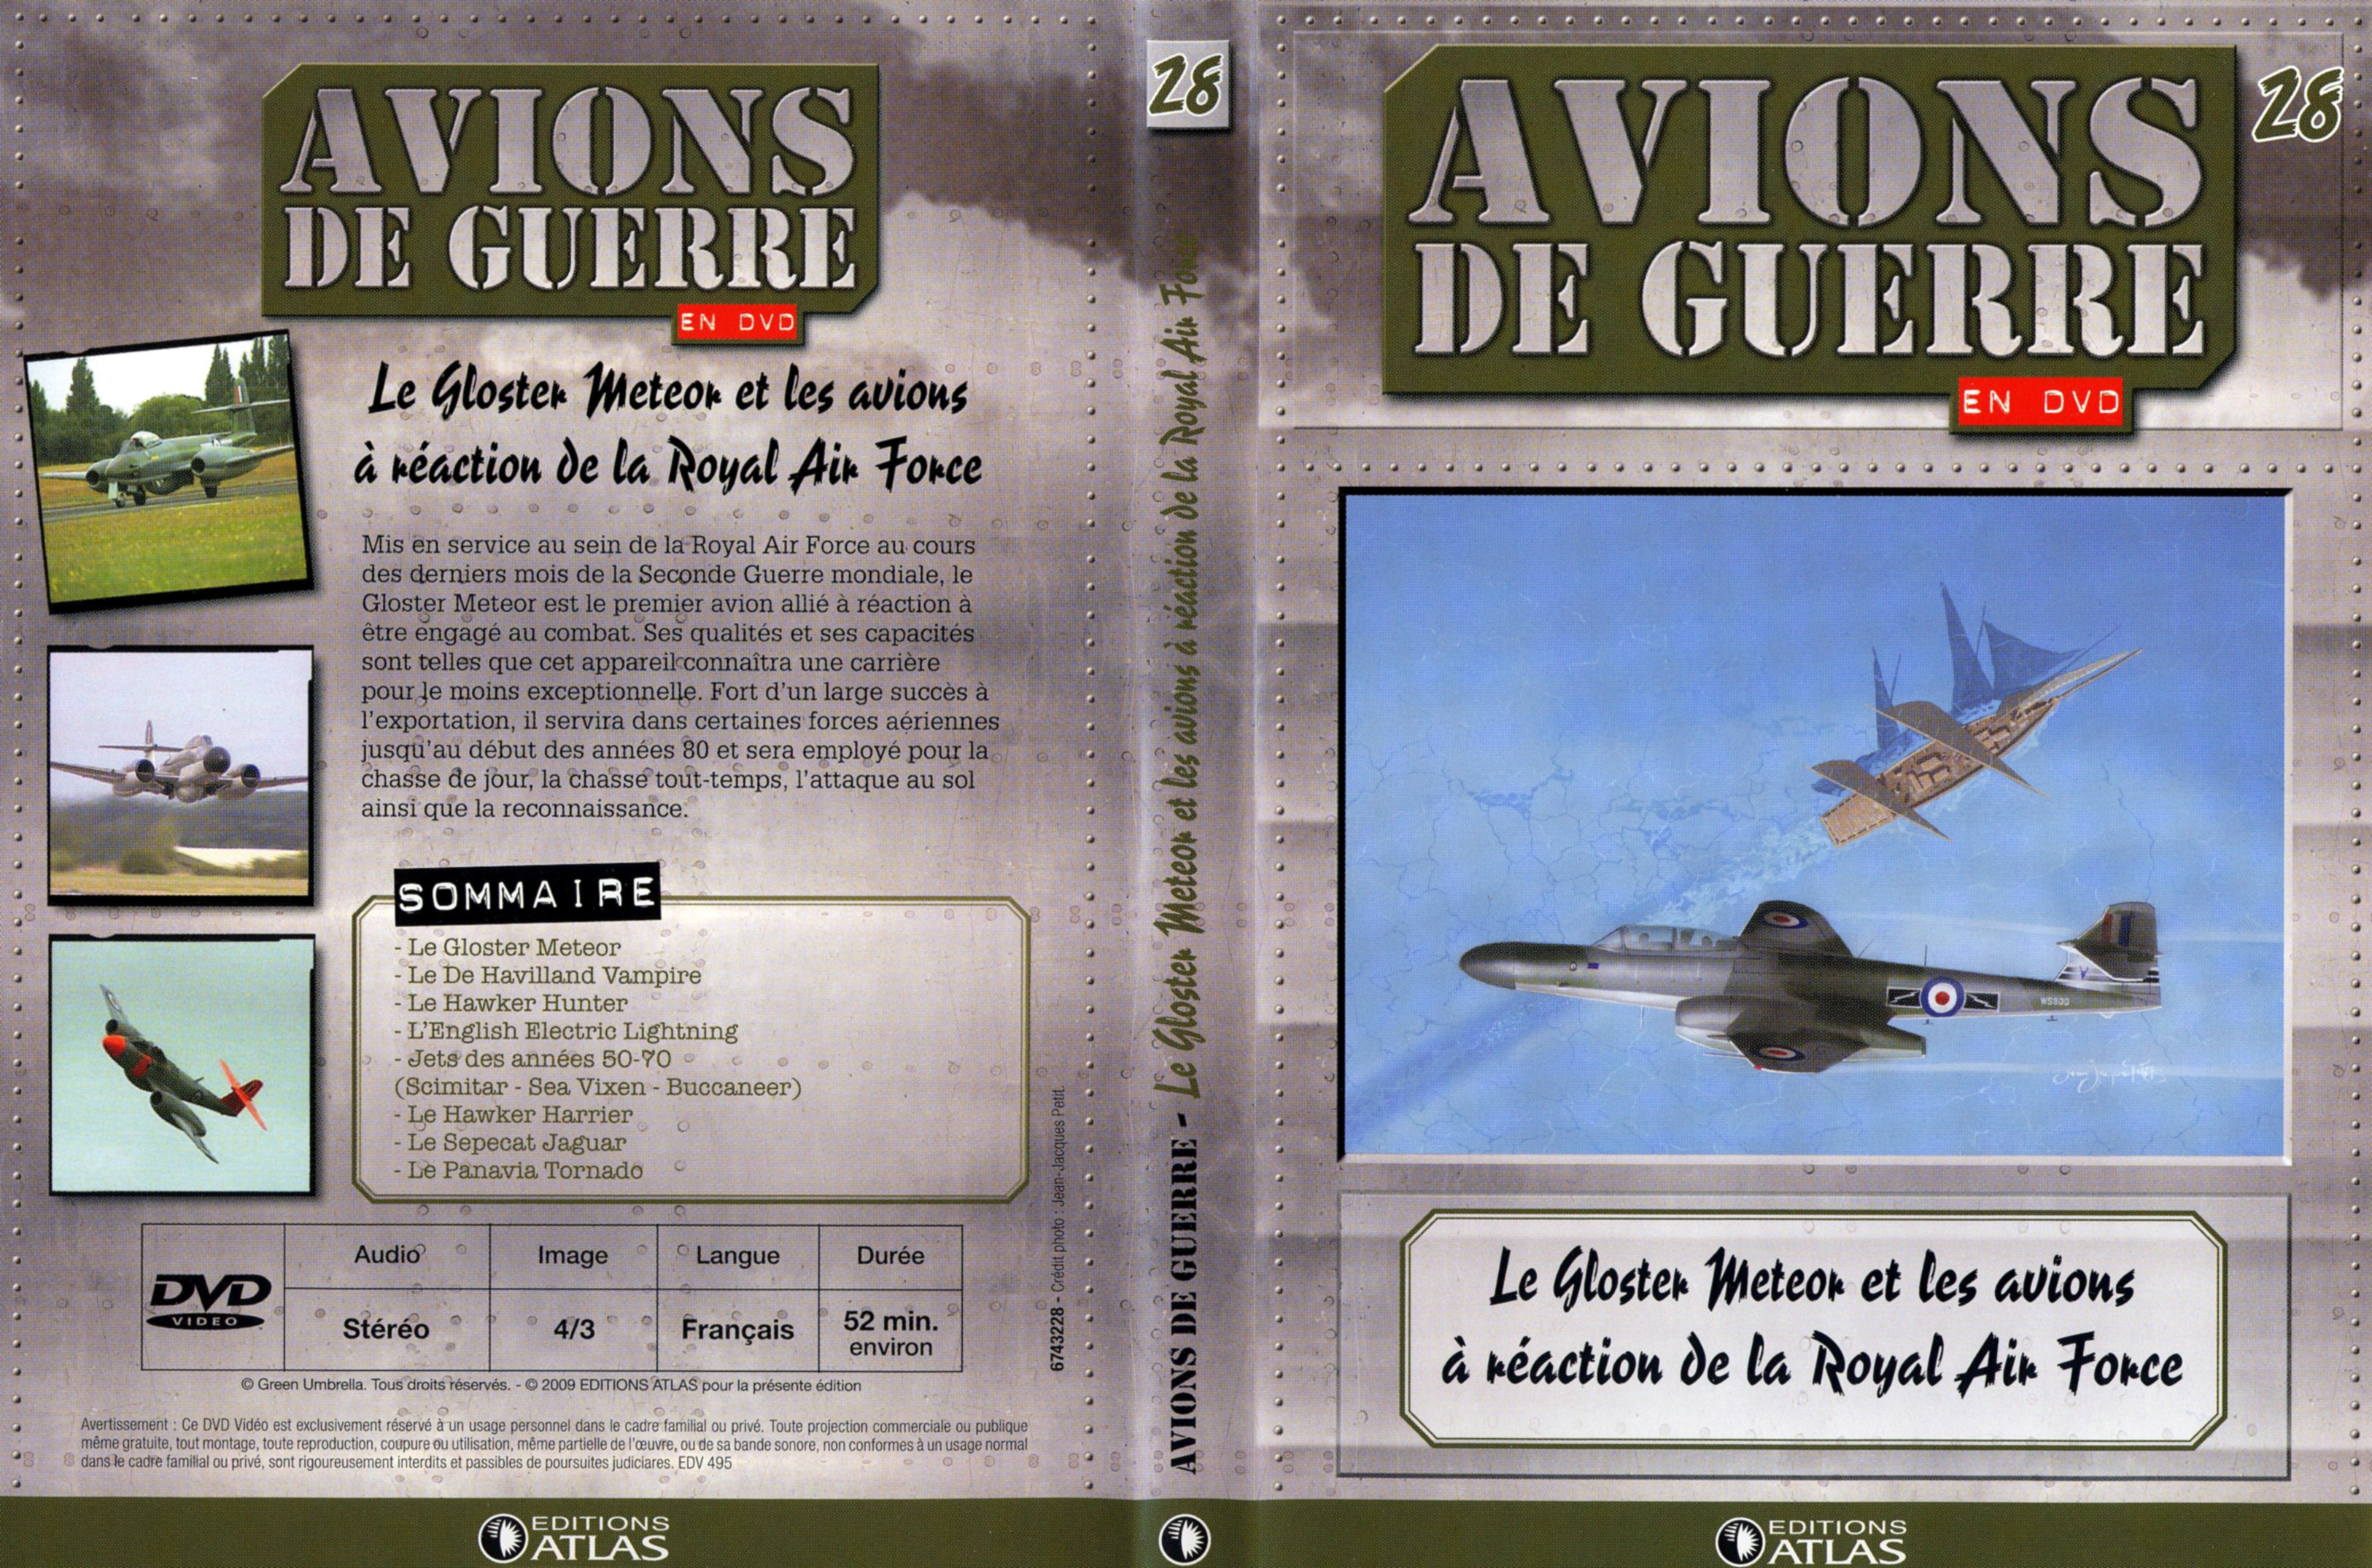 Jaquette DVD Avions de guerre en DVD vol 28